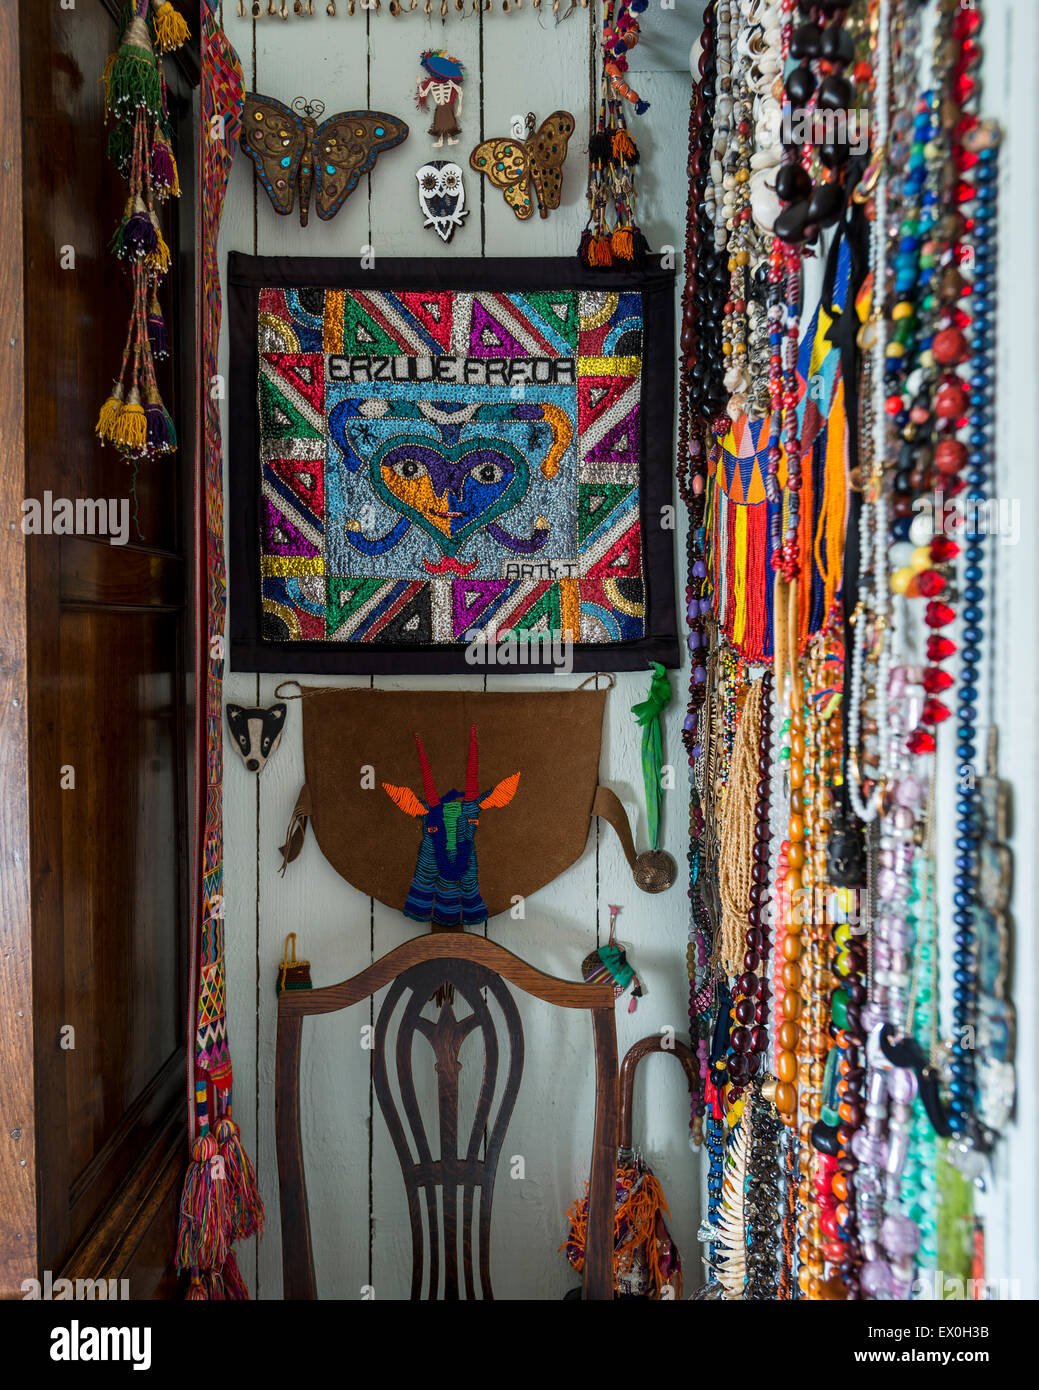 Halsketten und anderen ethnischen Schmuck und Kunstwerke an der Wand aufgehängt Stockfoto